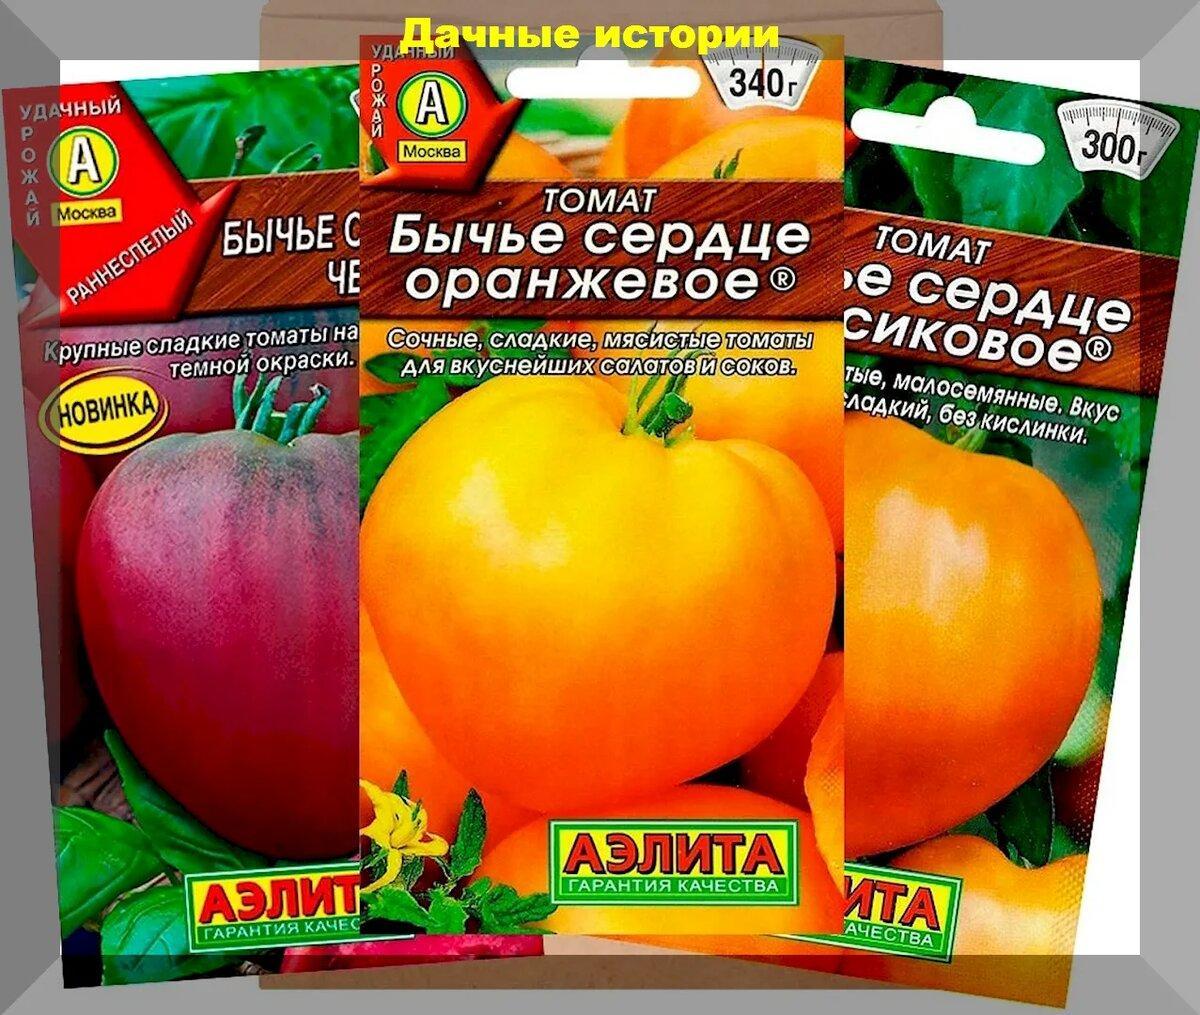 Огурцы, томаты, перцы, баклажаны: лучшие сорта-гибриды овощей, которые дают стабильно высокие урожаи даже у начинающих